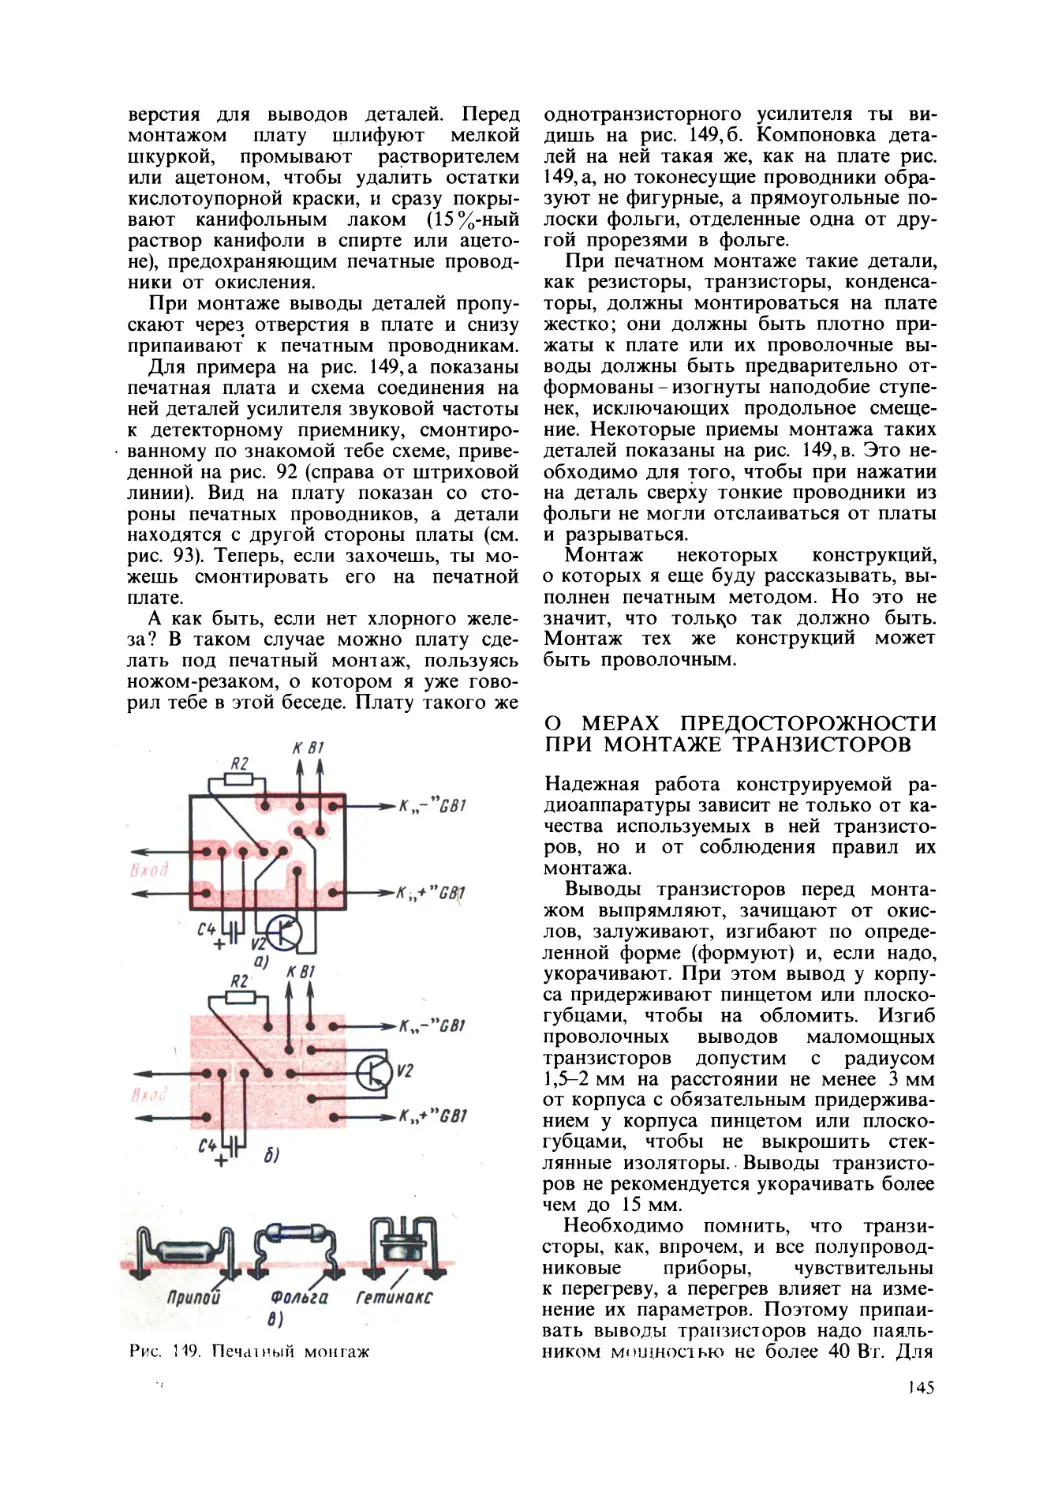 О мерах предосторожности при монтаже транзисторов